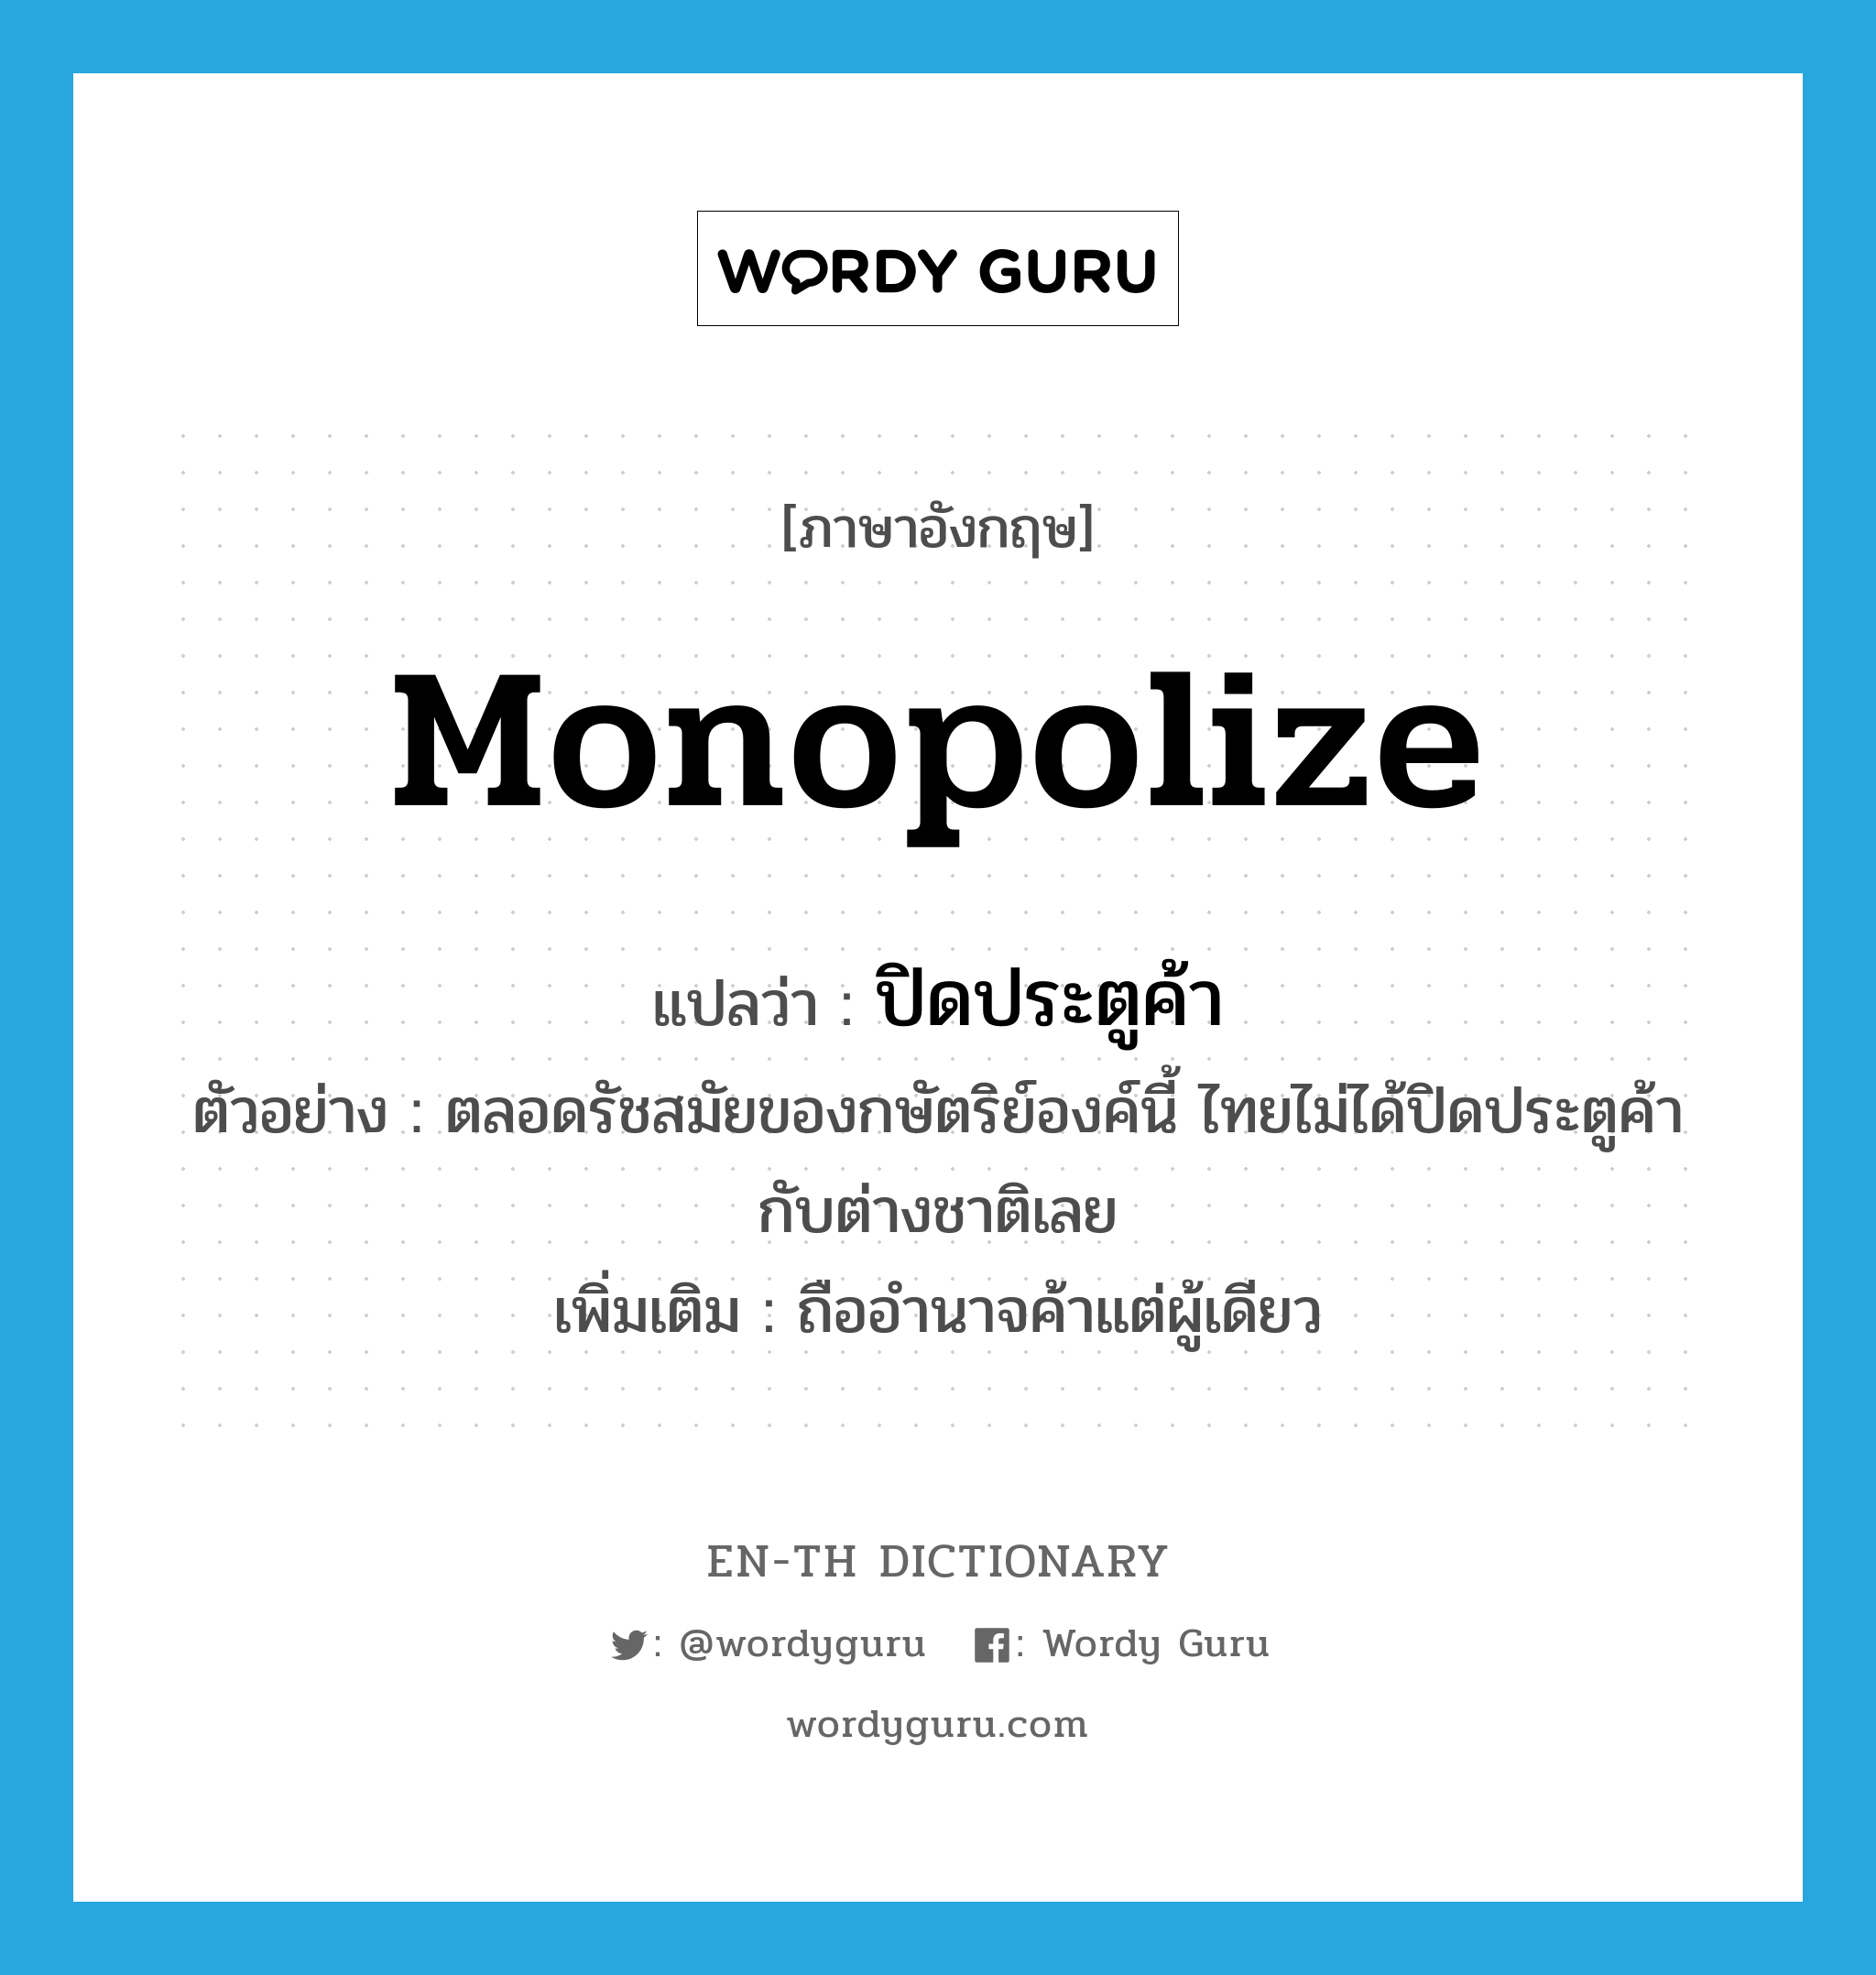 monopolize แปลว่า?, คำศัพท์ภาษาอังกฤษ monopolize แปลว่า ปิดประตูค้า ประเภท V ตัวอย่าง ตลอดรัชสมัยของกษัตริย์องค์นี้ ไทยไม่ได้ปิดประตูค้ากับต่างชาติเลย เพิ่มเติม ถืออำนาจค้าแต่ผู้เดียว หมวด V